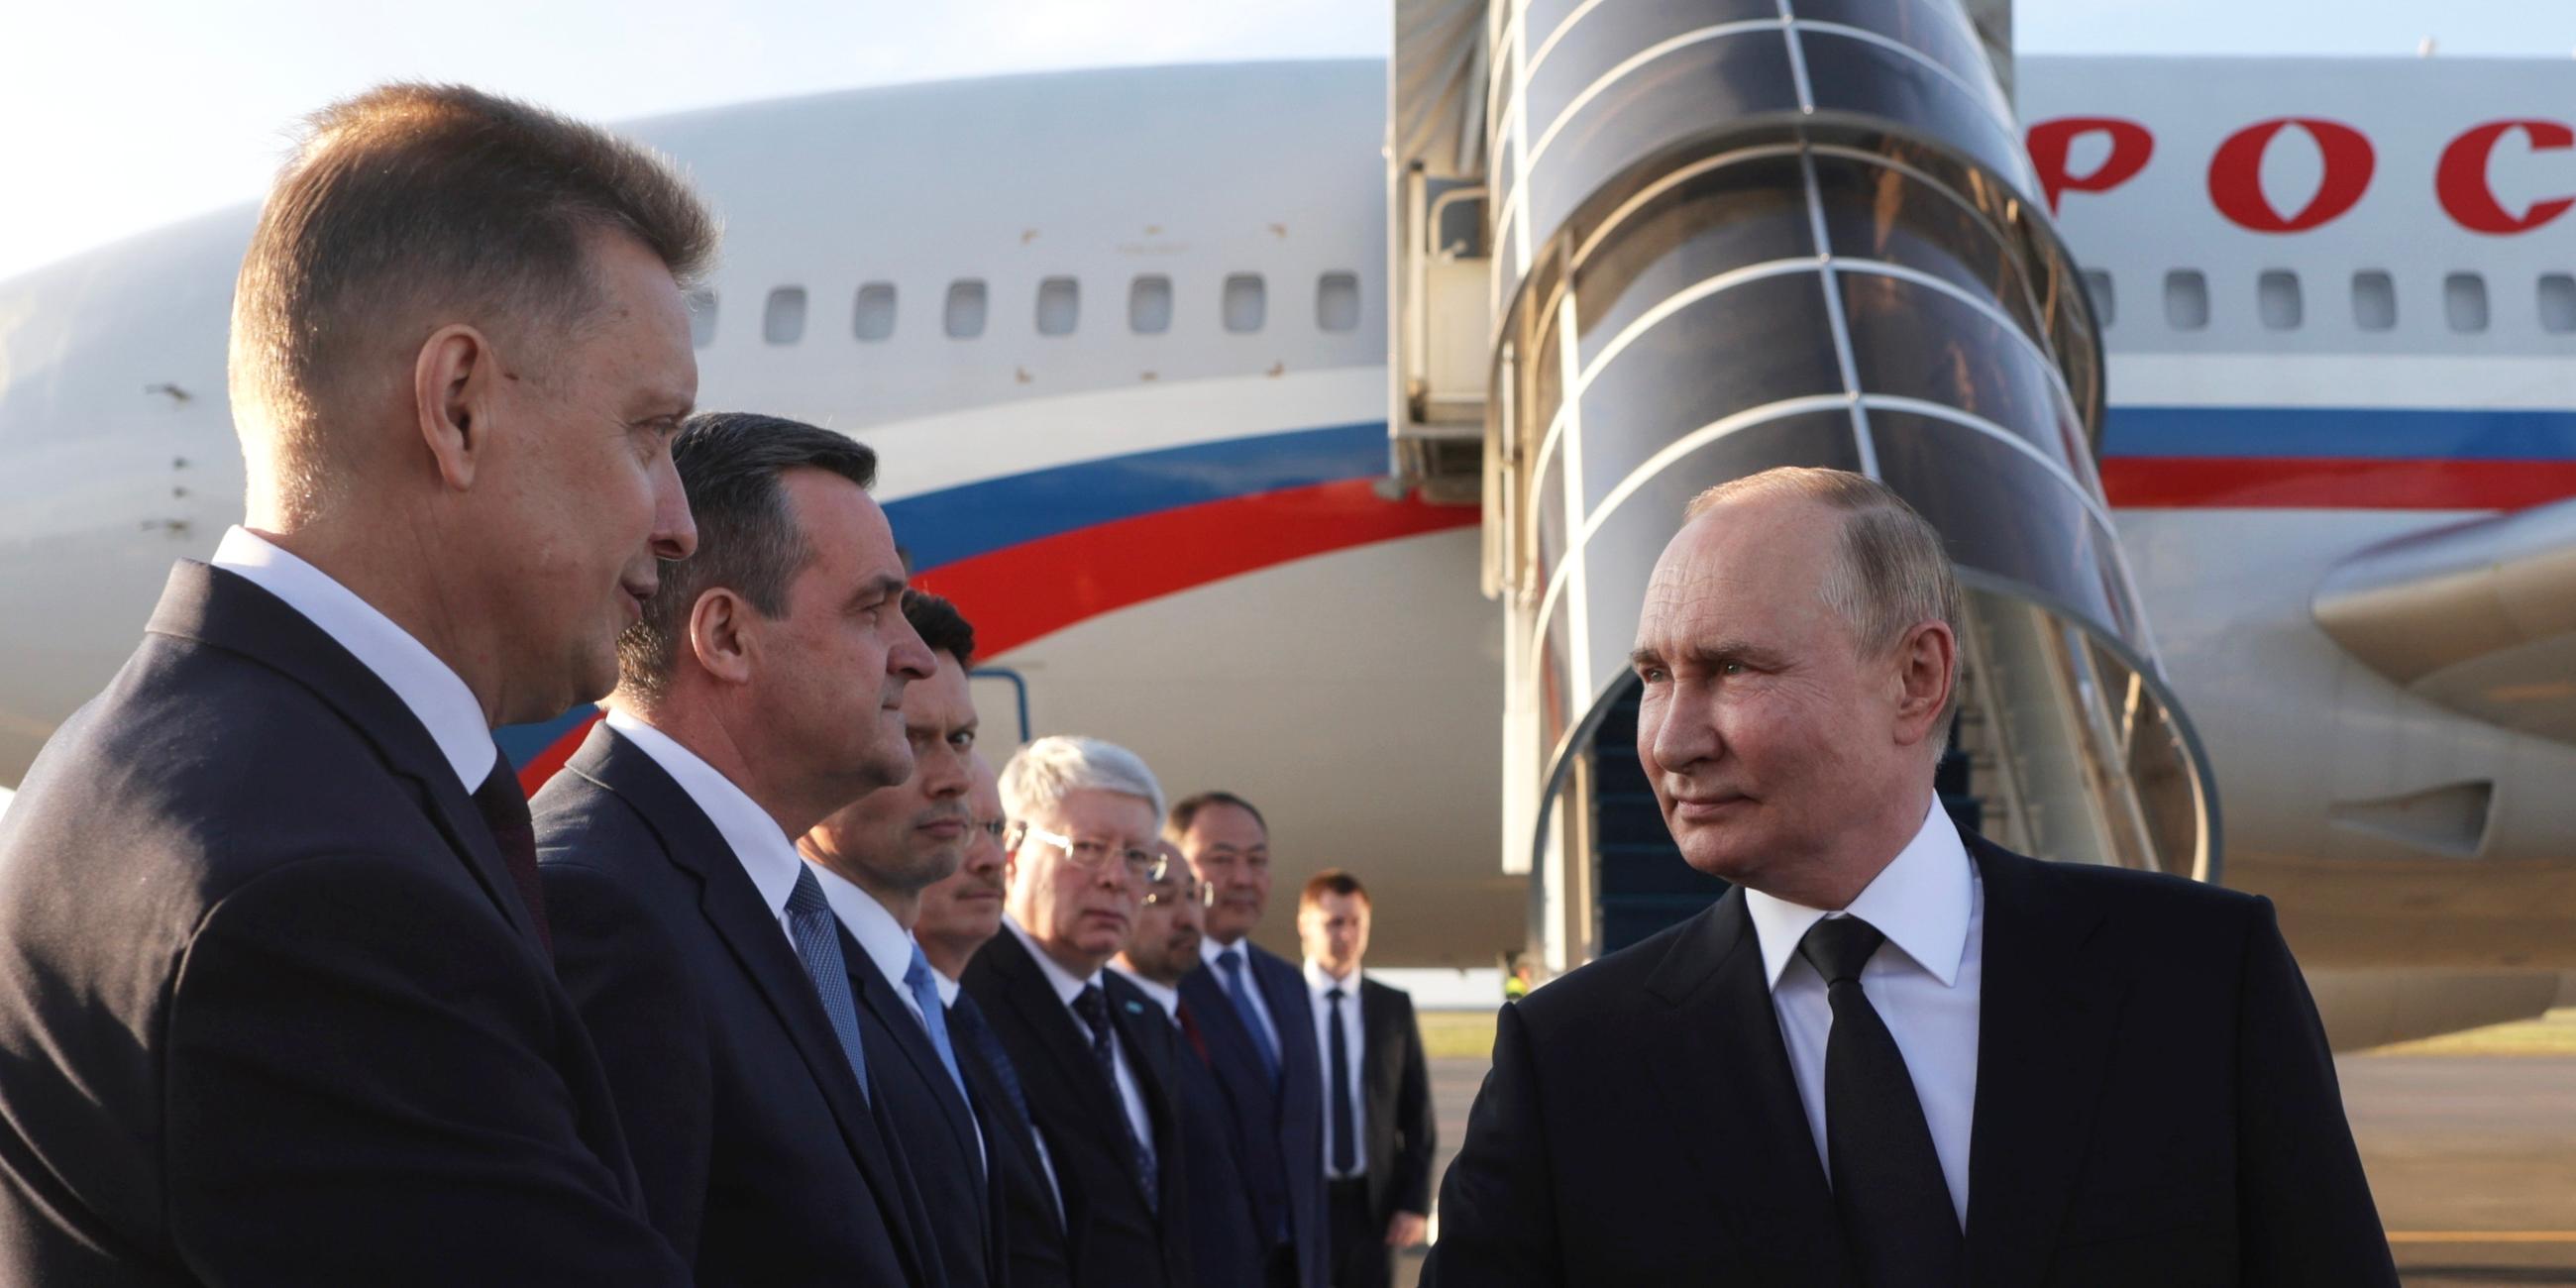 Putin beim Handschlag auf dem Flughafen in Astana (Kasachstan).